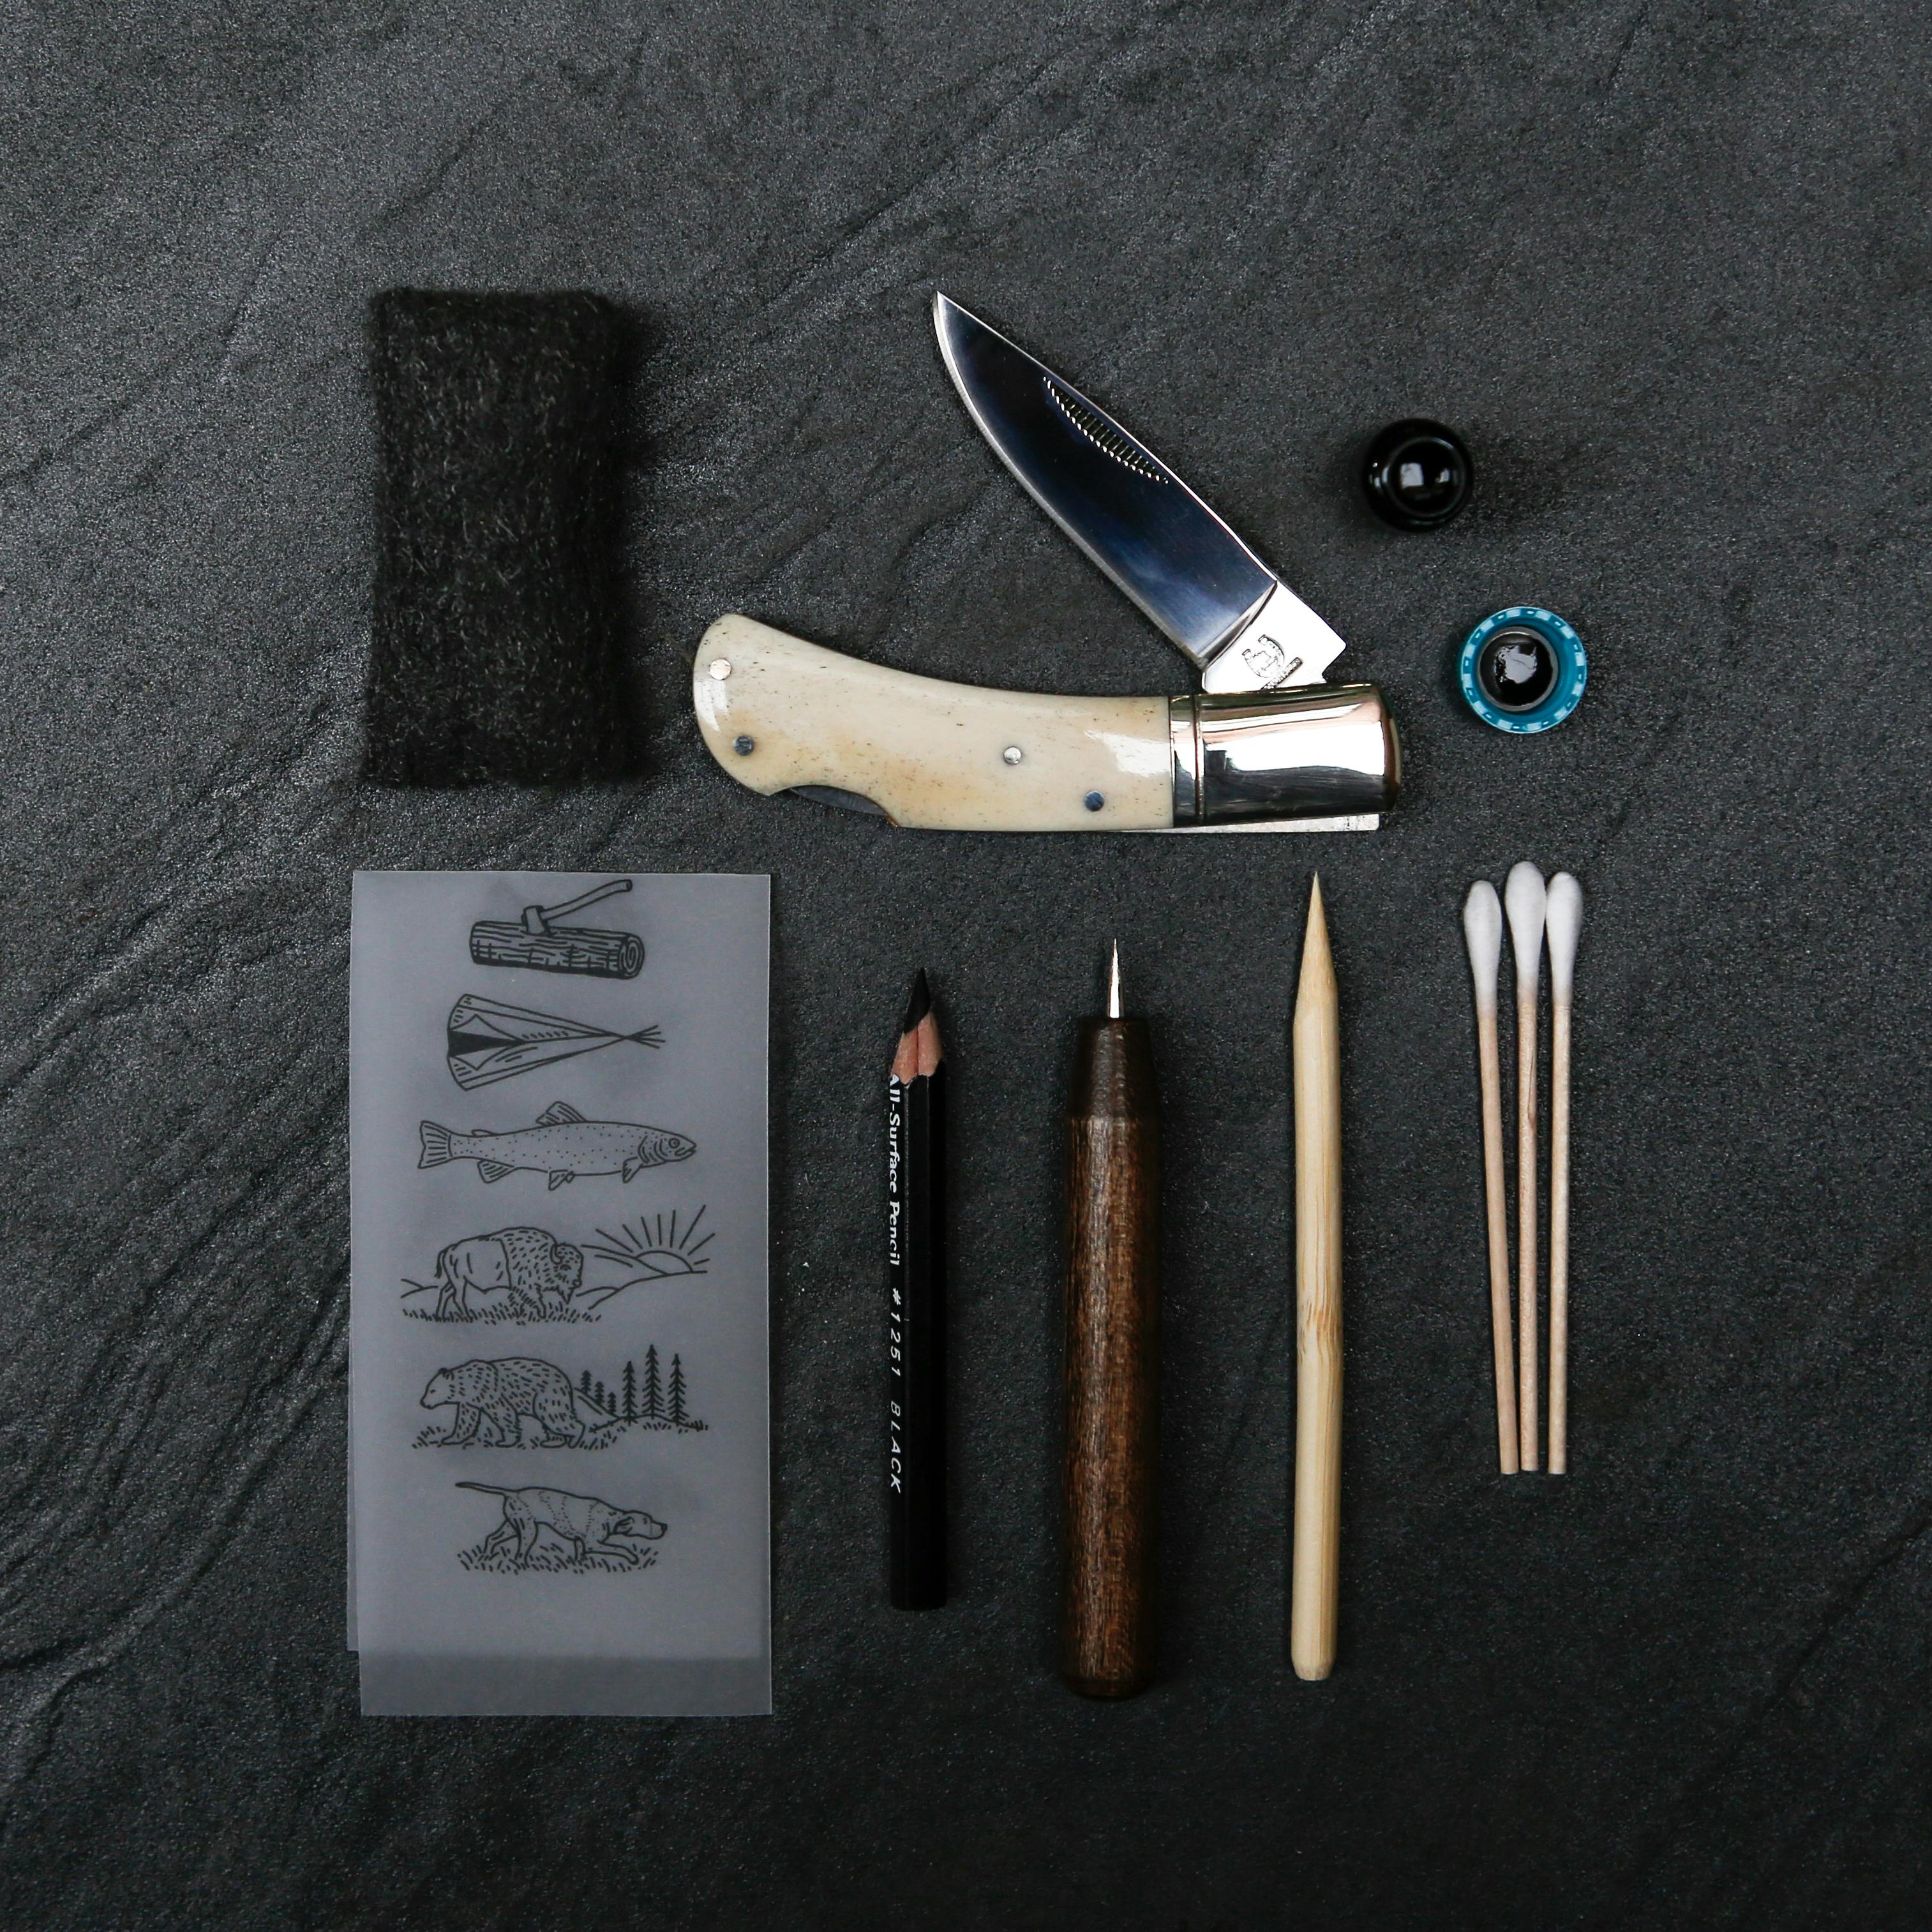 Scrimshaw Pocket Knife DIY Kit Mollyjogger